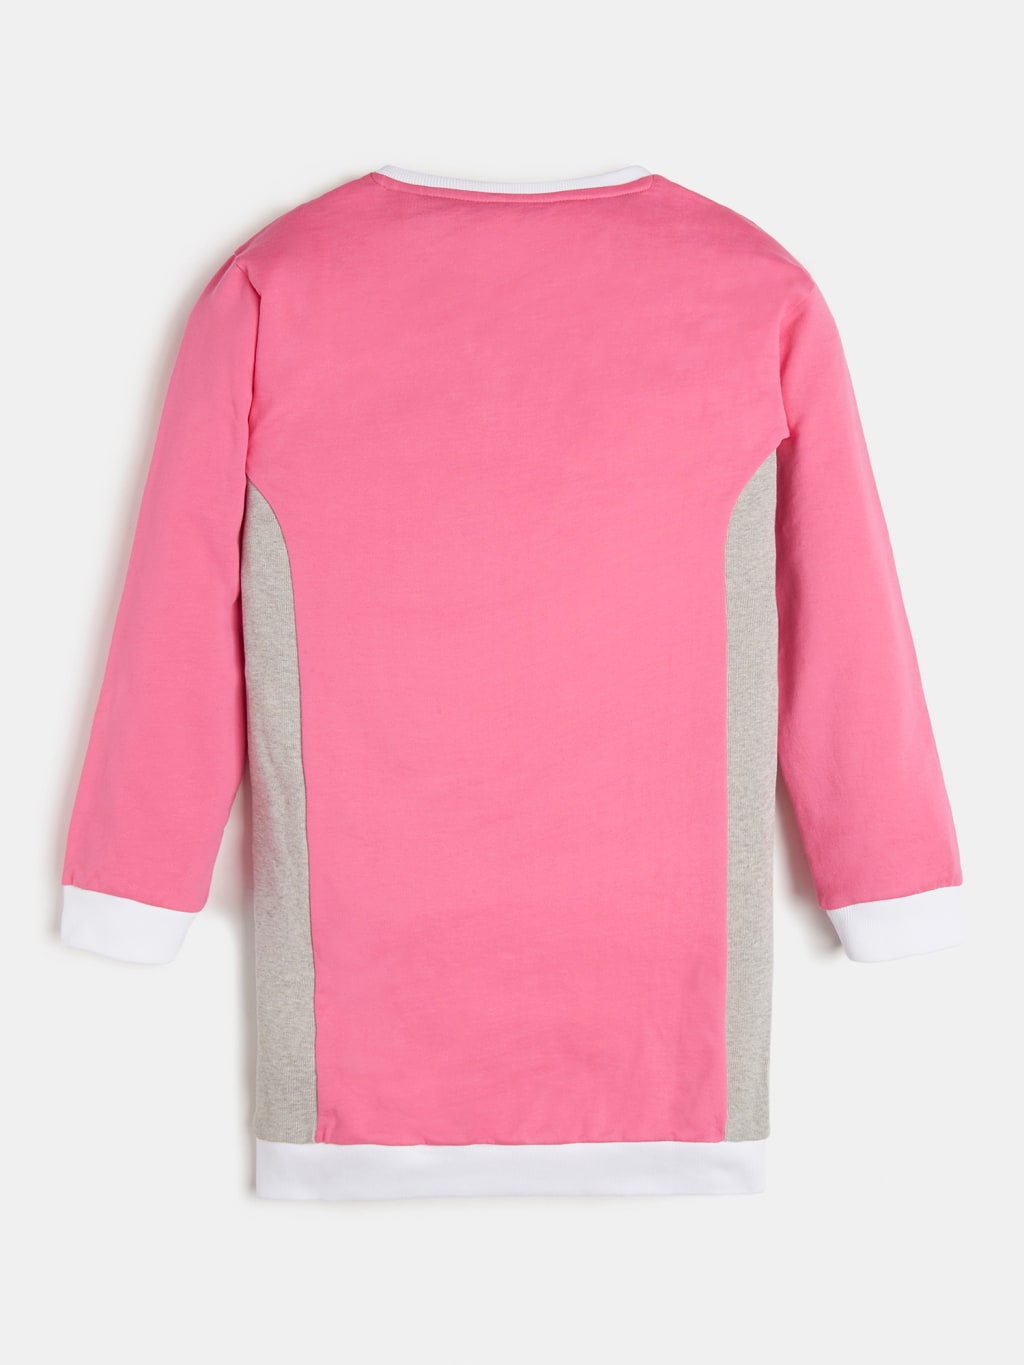 Mädchen Pullover Kleid Colorblock Pink J1RK00 KA6R0